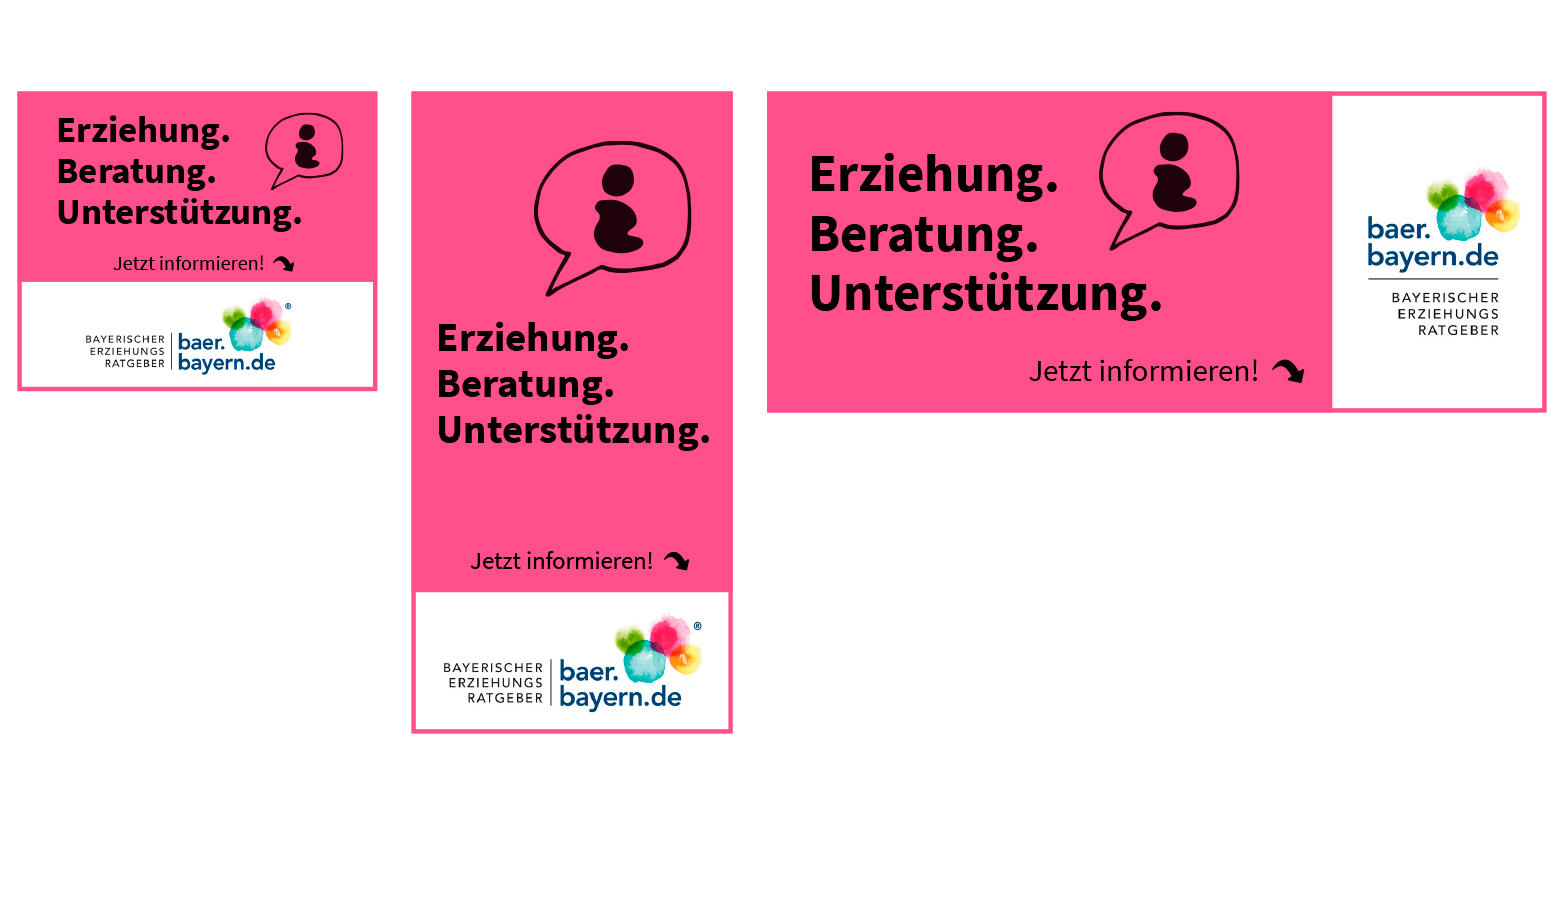 Online Banner: Logo Bayerischer Erziehungsratgeber und Überschrift Erziehung, Beratung, Unterstützung.